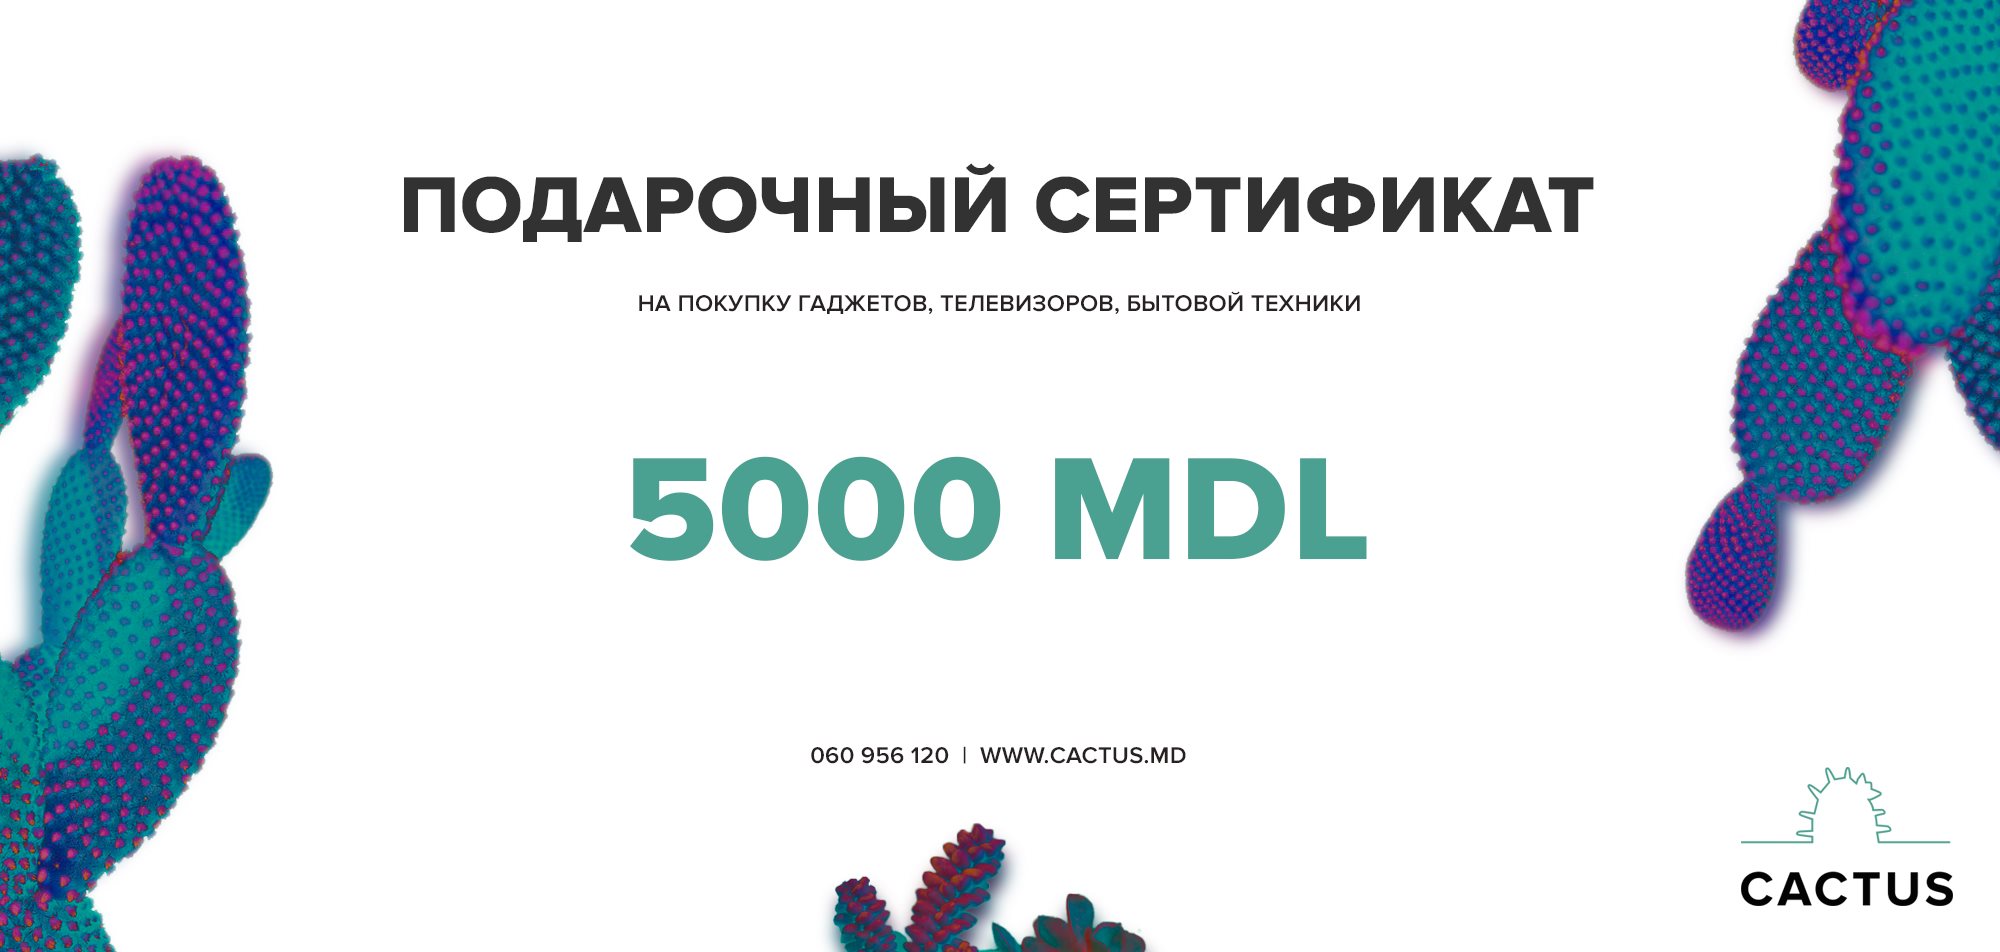 Подарочный сертификат - 5000 mdl